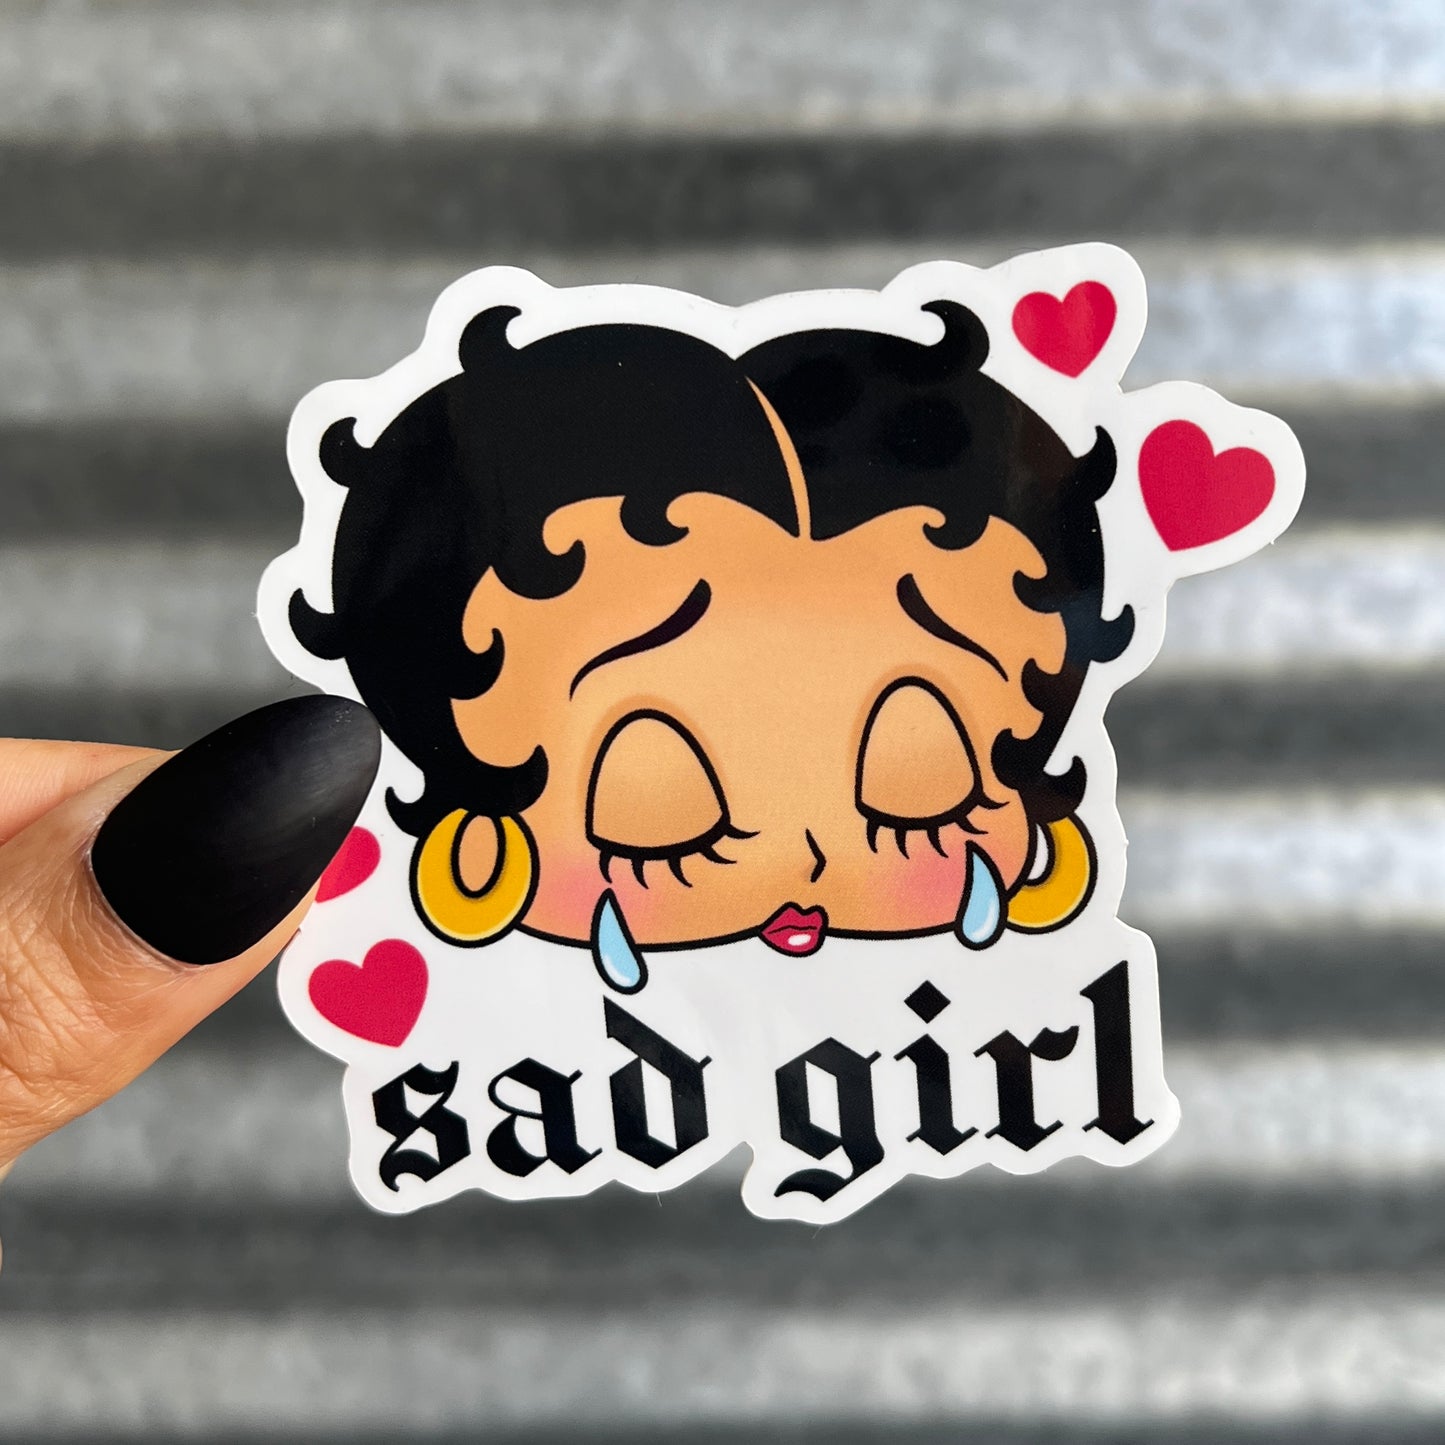 Sad Girl - Sticker